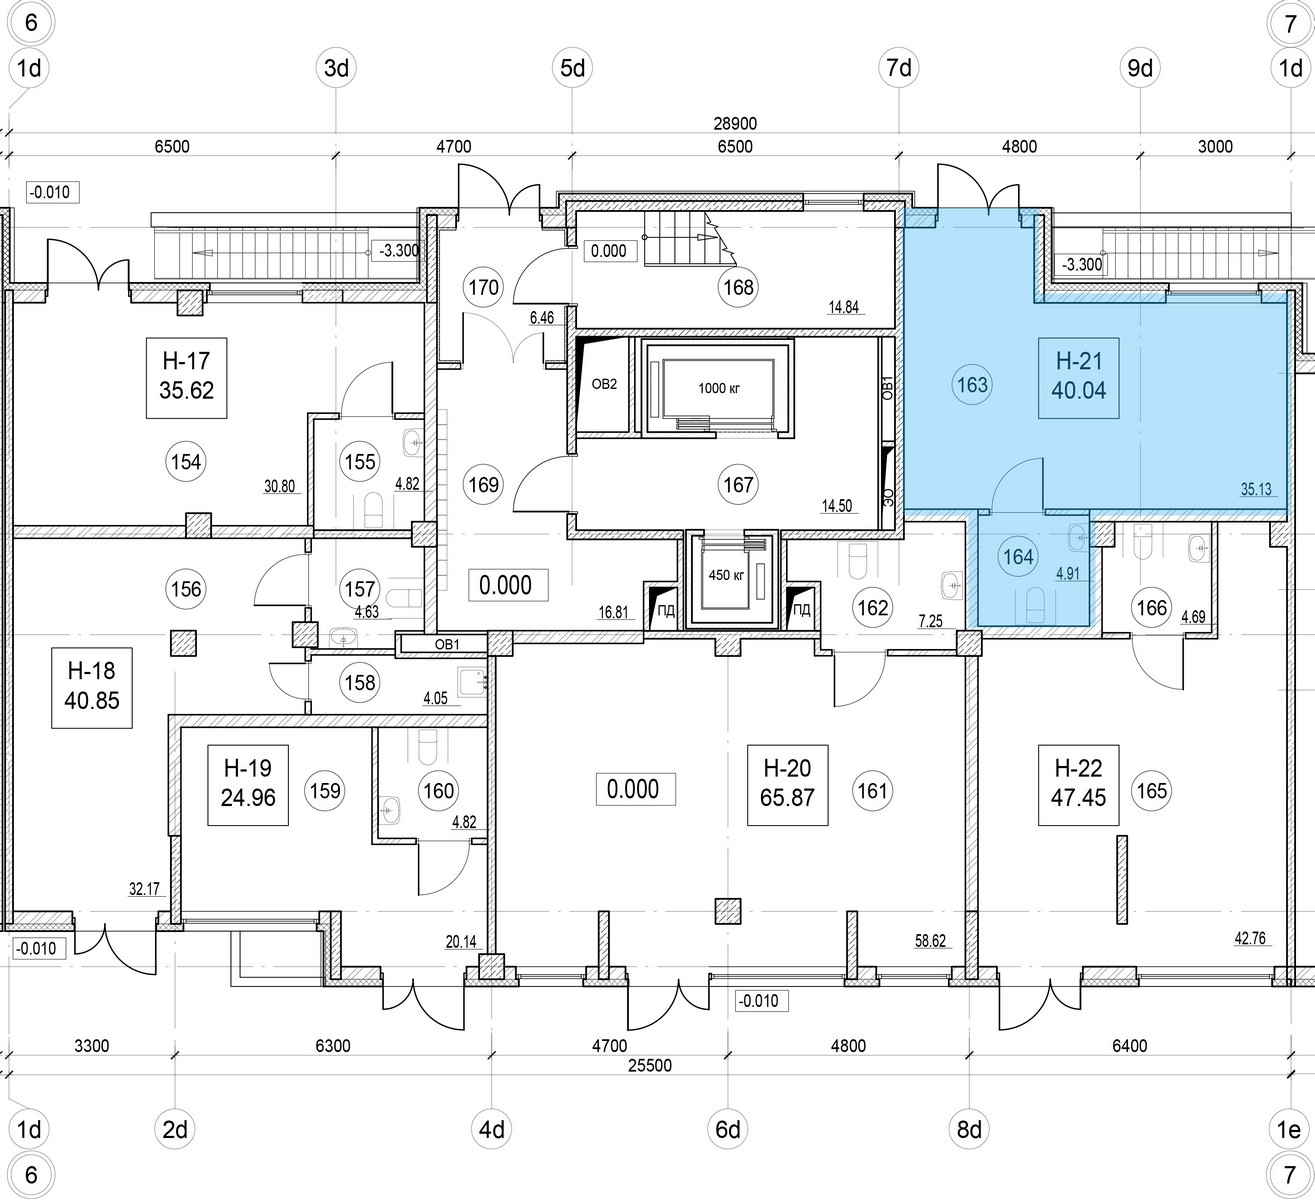 Помещение, 40.04 м² в ЖК "ID Murino II" - планировка, фото №1